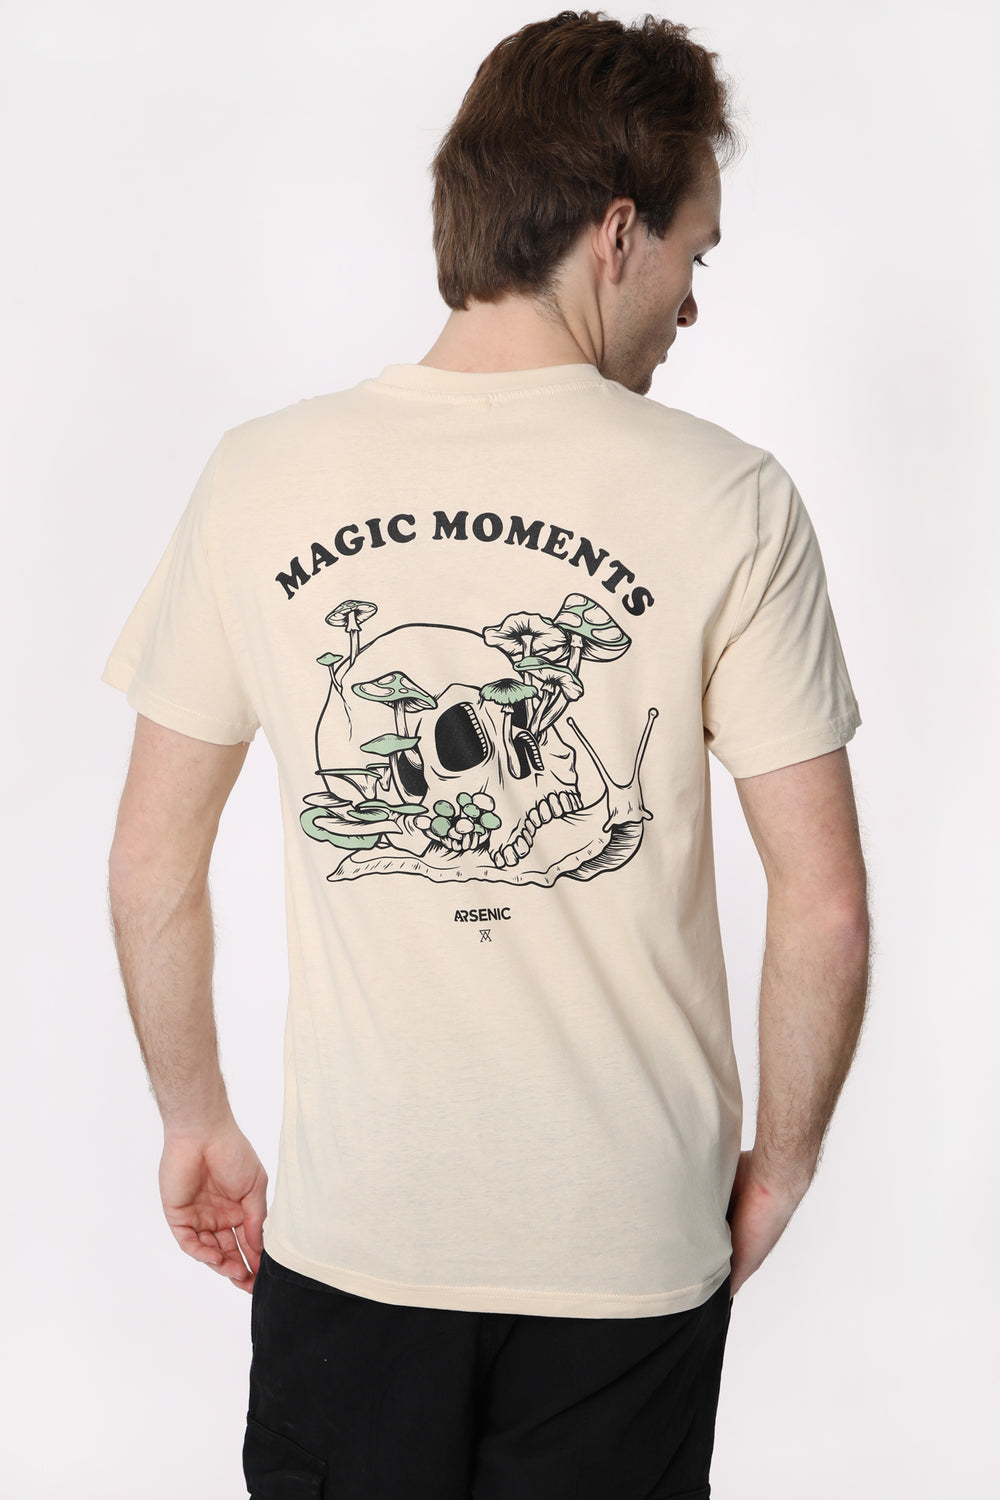 T-Shirt Imprimé Magic Moments Arsenic Homme T-Shirt Imprimé Magic Moments Arsenic Homme